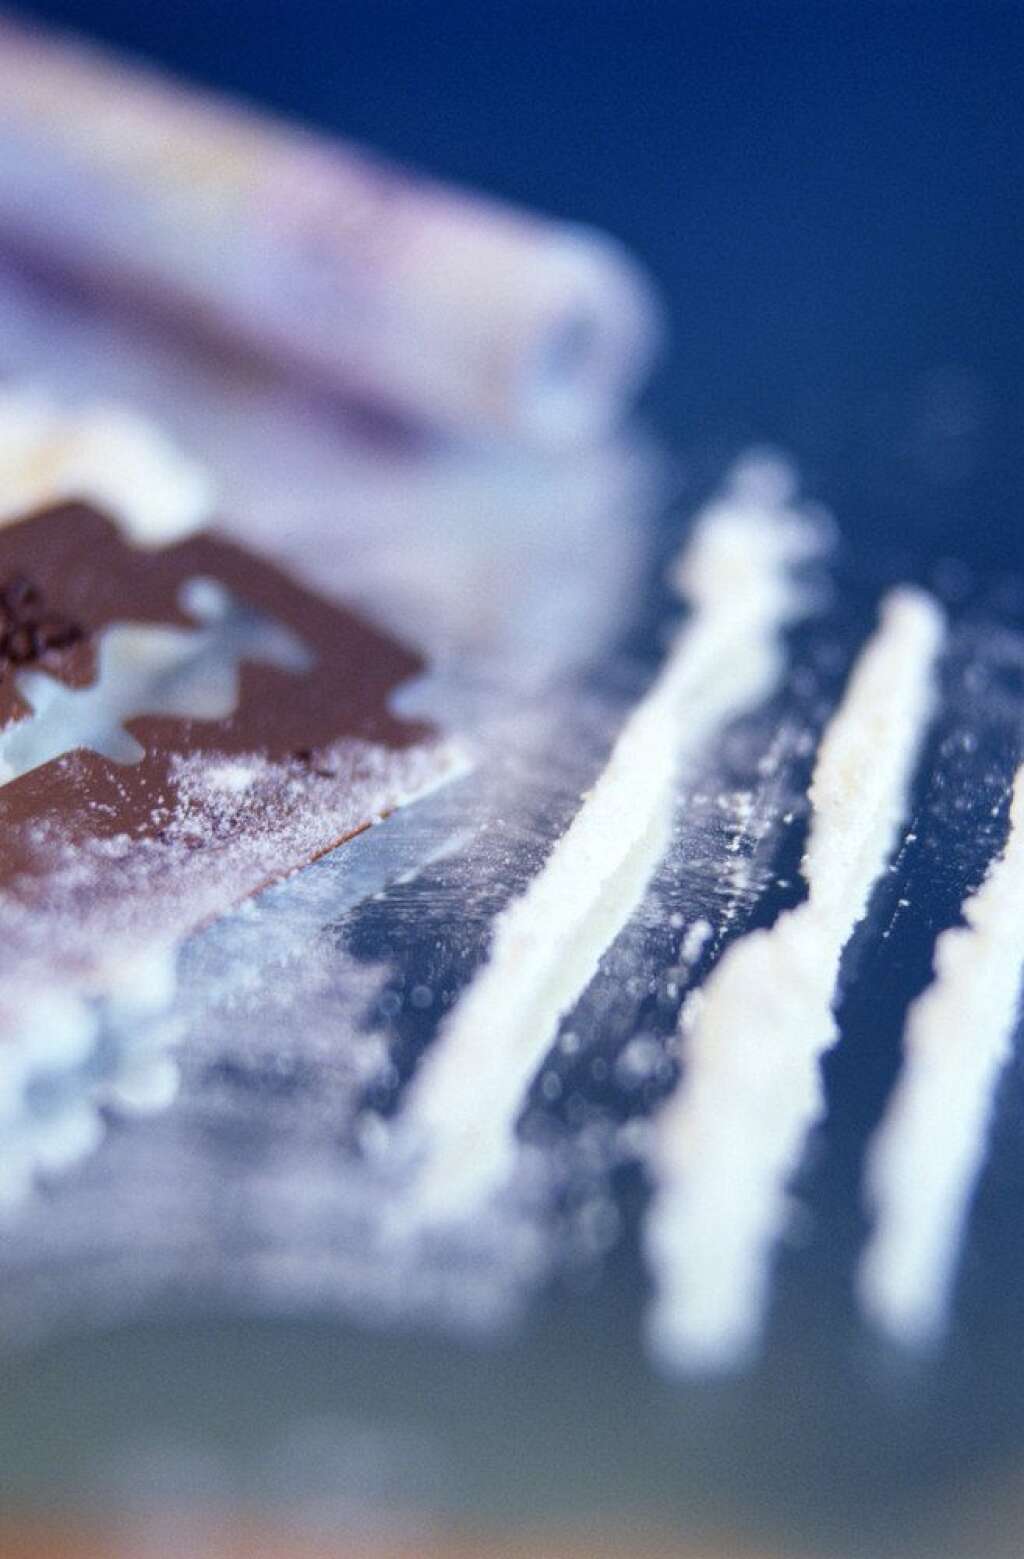 COCAINE - - La cocaïne est la deuxième drogue illicite la plus consommée en Europe, même si des niveaux élevés de consommation ne sont observés que dans certains pays d'Europe de l'Ouest. -14,1 millions des 15-64 ans (4,2% des adultes) en ont consommé dans leur vie - 3,1 millions de personnes (0,9%) en ont consommé au cours des 12 derniers mois (dont 2,2 millions des jeunes adultes de 15-34 ans). - 71 tonnes ont été interceptées en Europe au cours de 77.000 saisies.